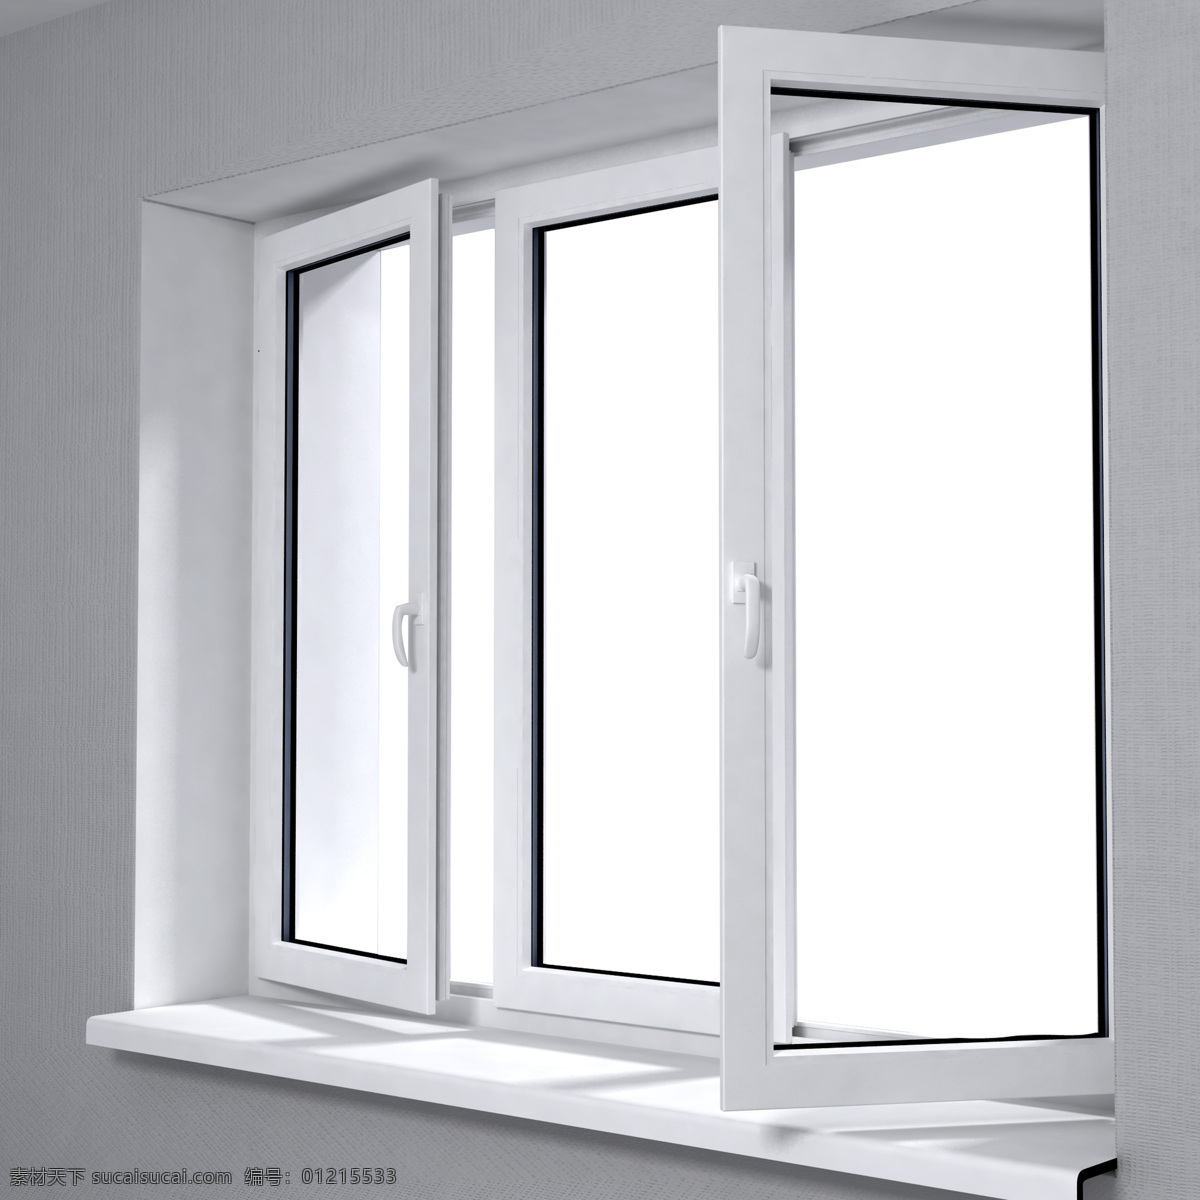 打开 白色 窗户 窗户模型 窗户设计 白色窗户 铝合金窗户 其他类别 生活百科